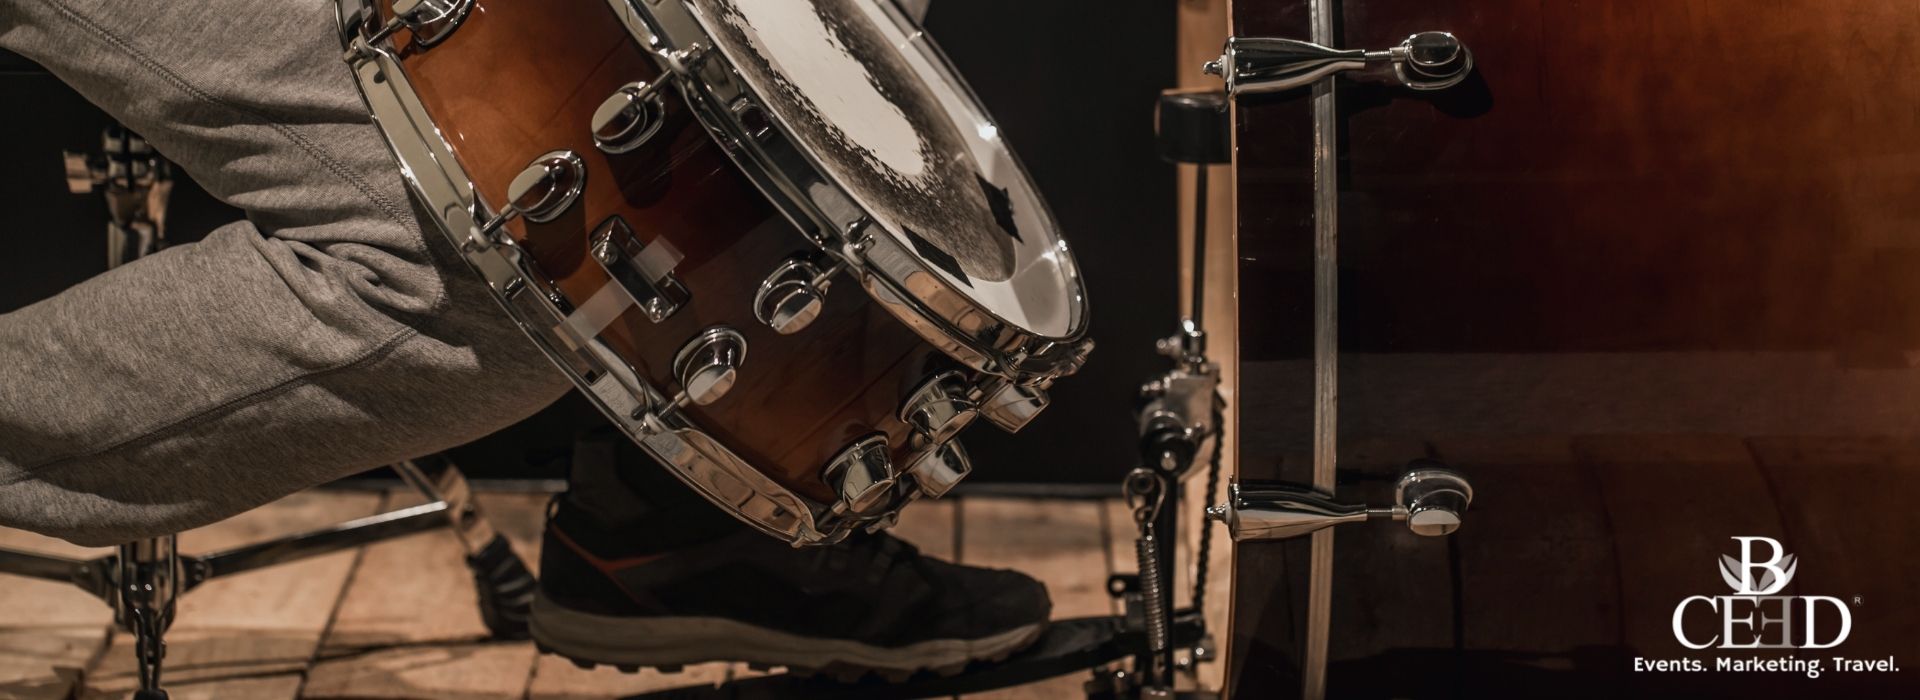 B-ceed drum workshop with rhythm